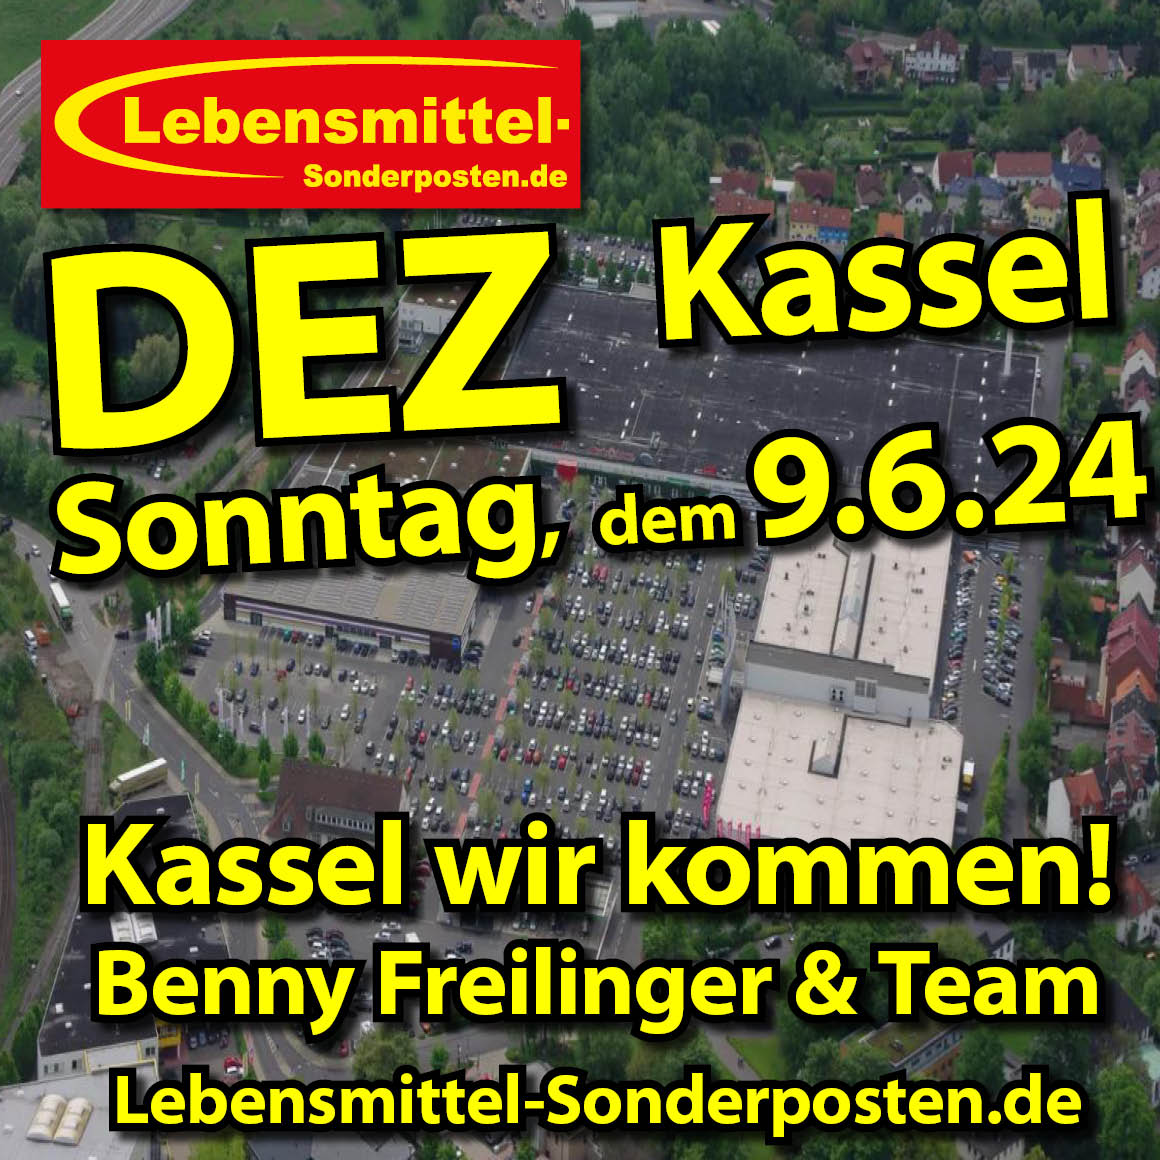 KASSEL wir kommen zum DEZ am Sonntag, dem  9.6.24  
Benny Freilinger & Team
Lebensmittel-Sonderposten.de